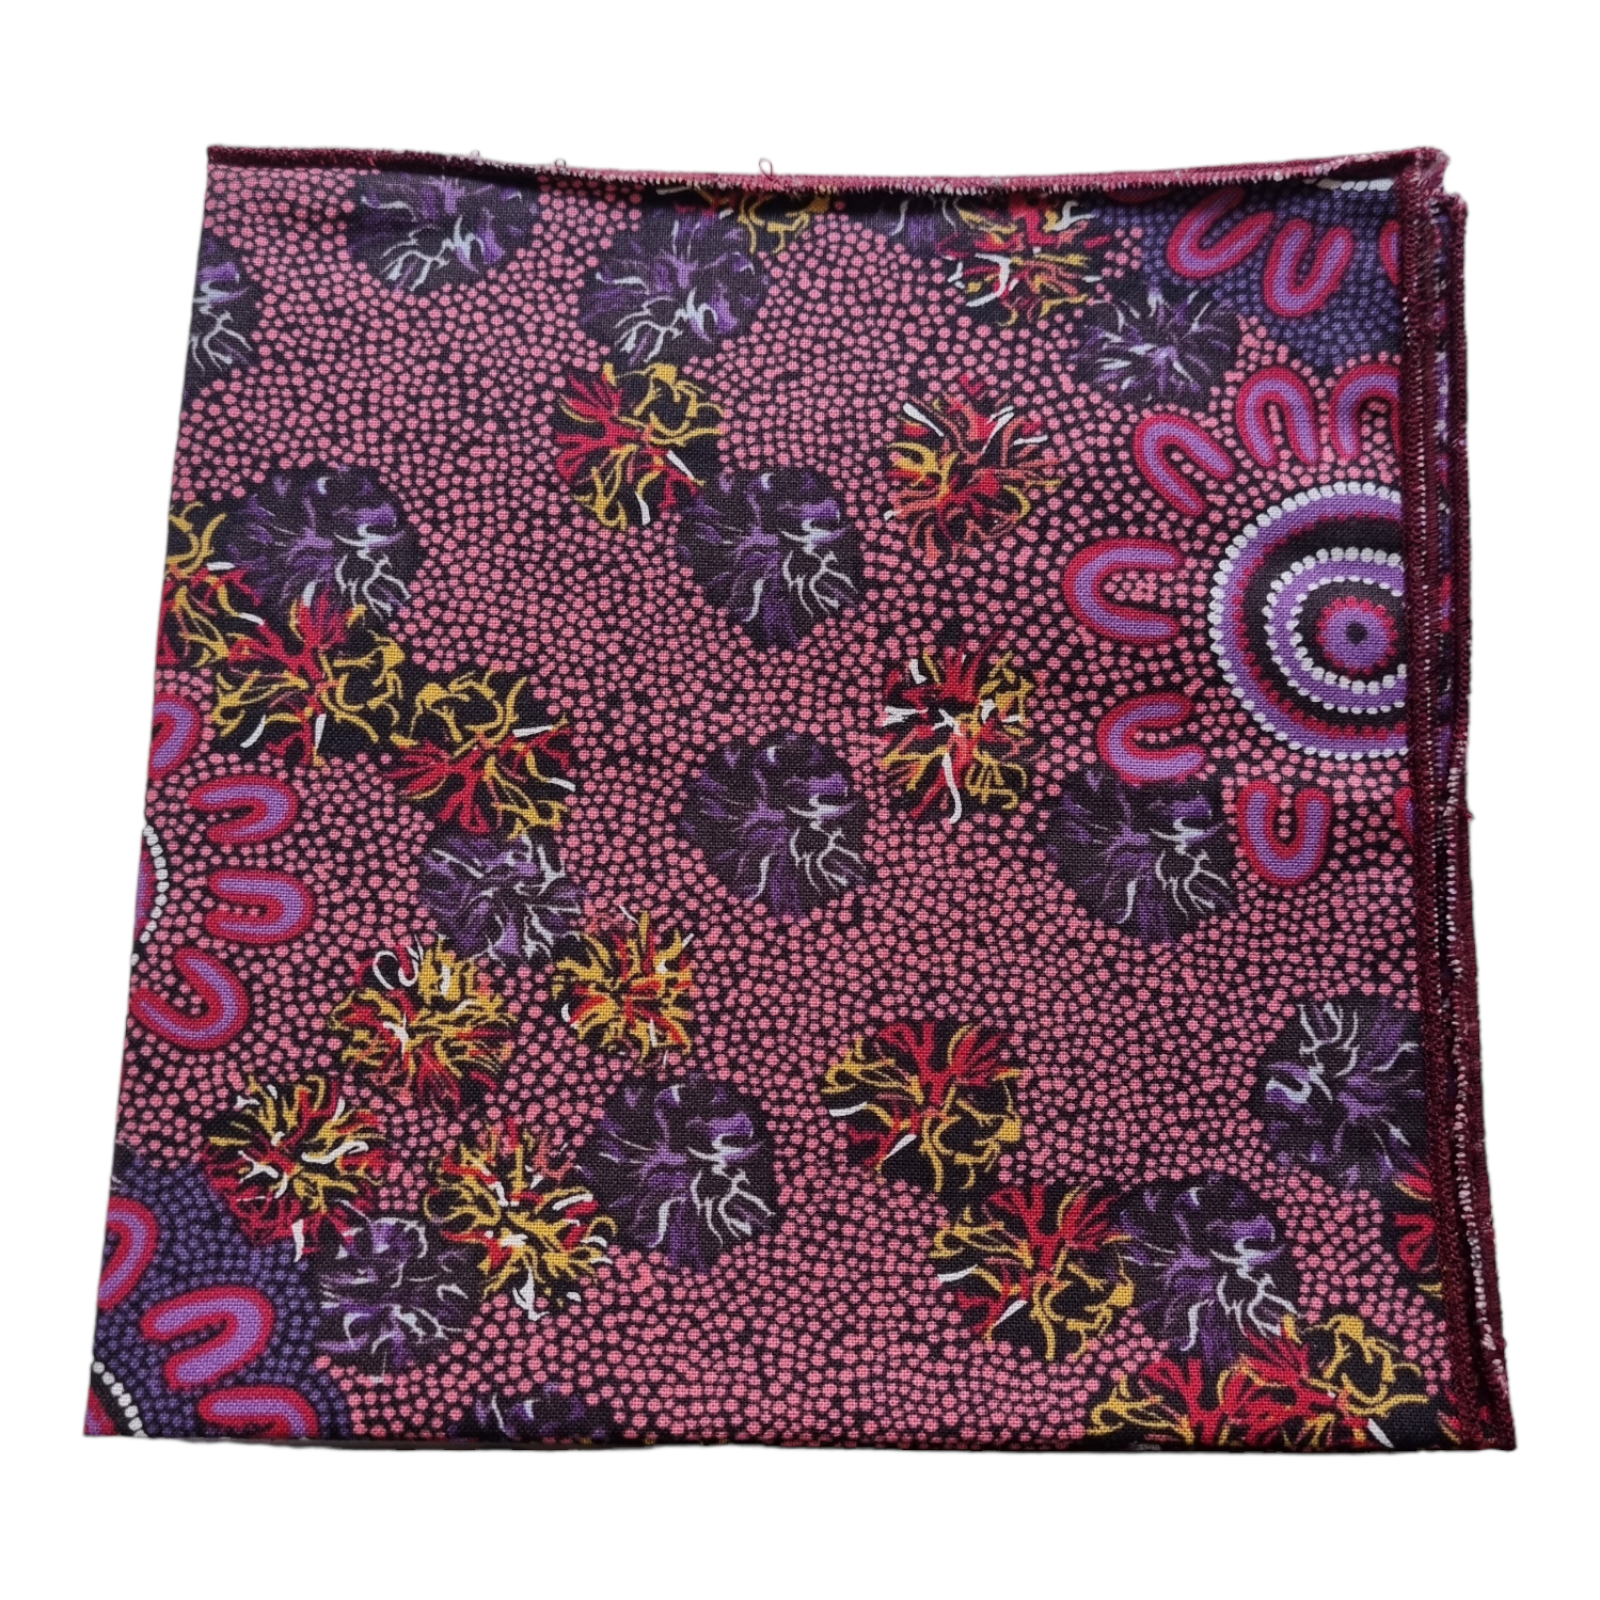 Aboriginal Handkerchief indigenous Art Cotton Hanky Pocket Women's Business